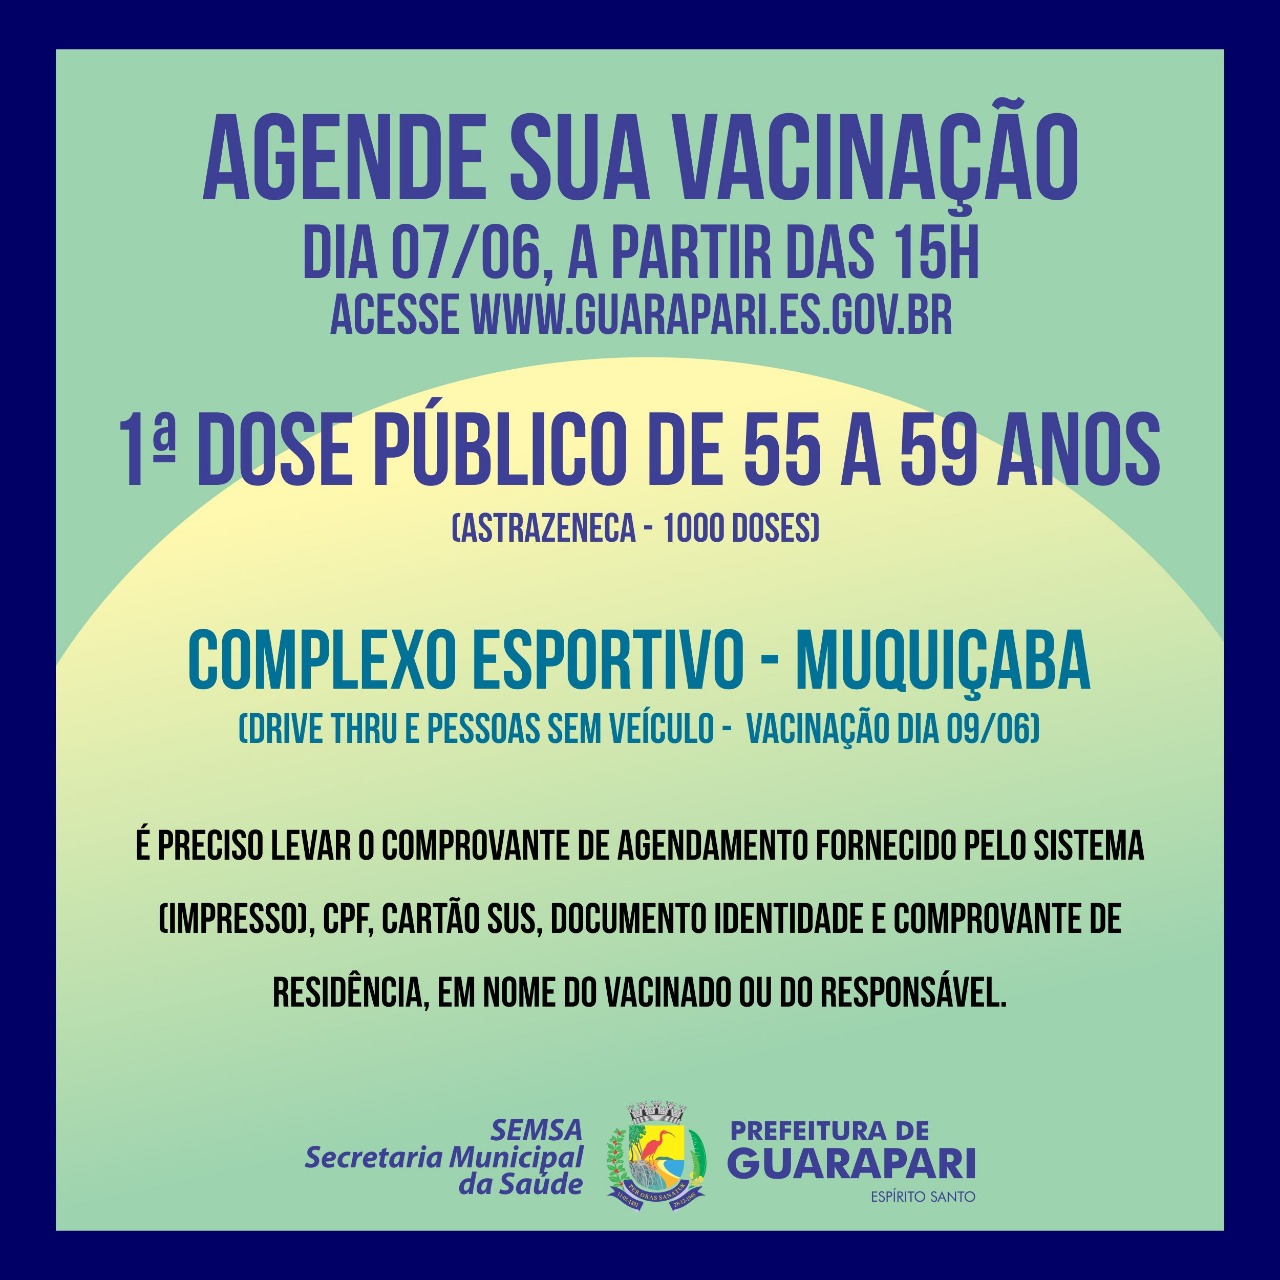 Covid-19: Guarapari abre nesta segunda-feira o agendamento de vacinação para pessoas entre 55 e 59 anos – AstraZeneca 